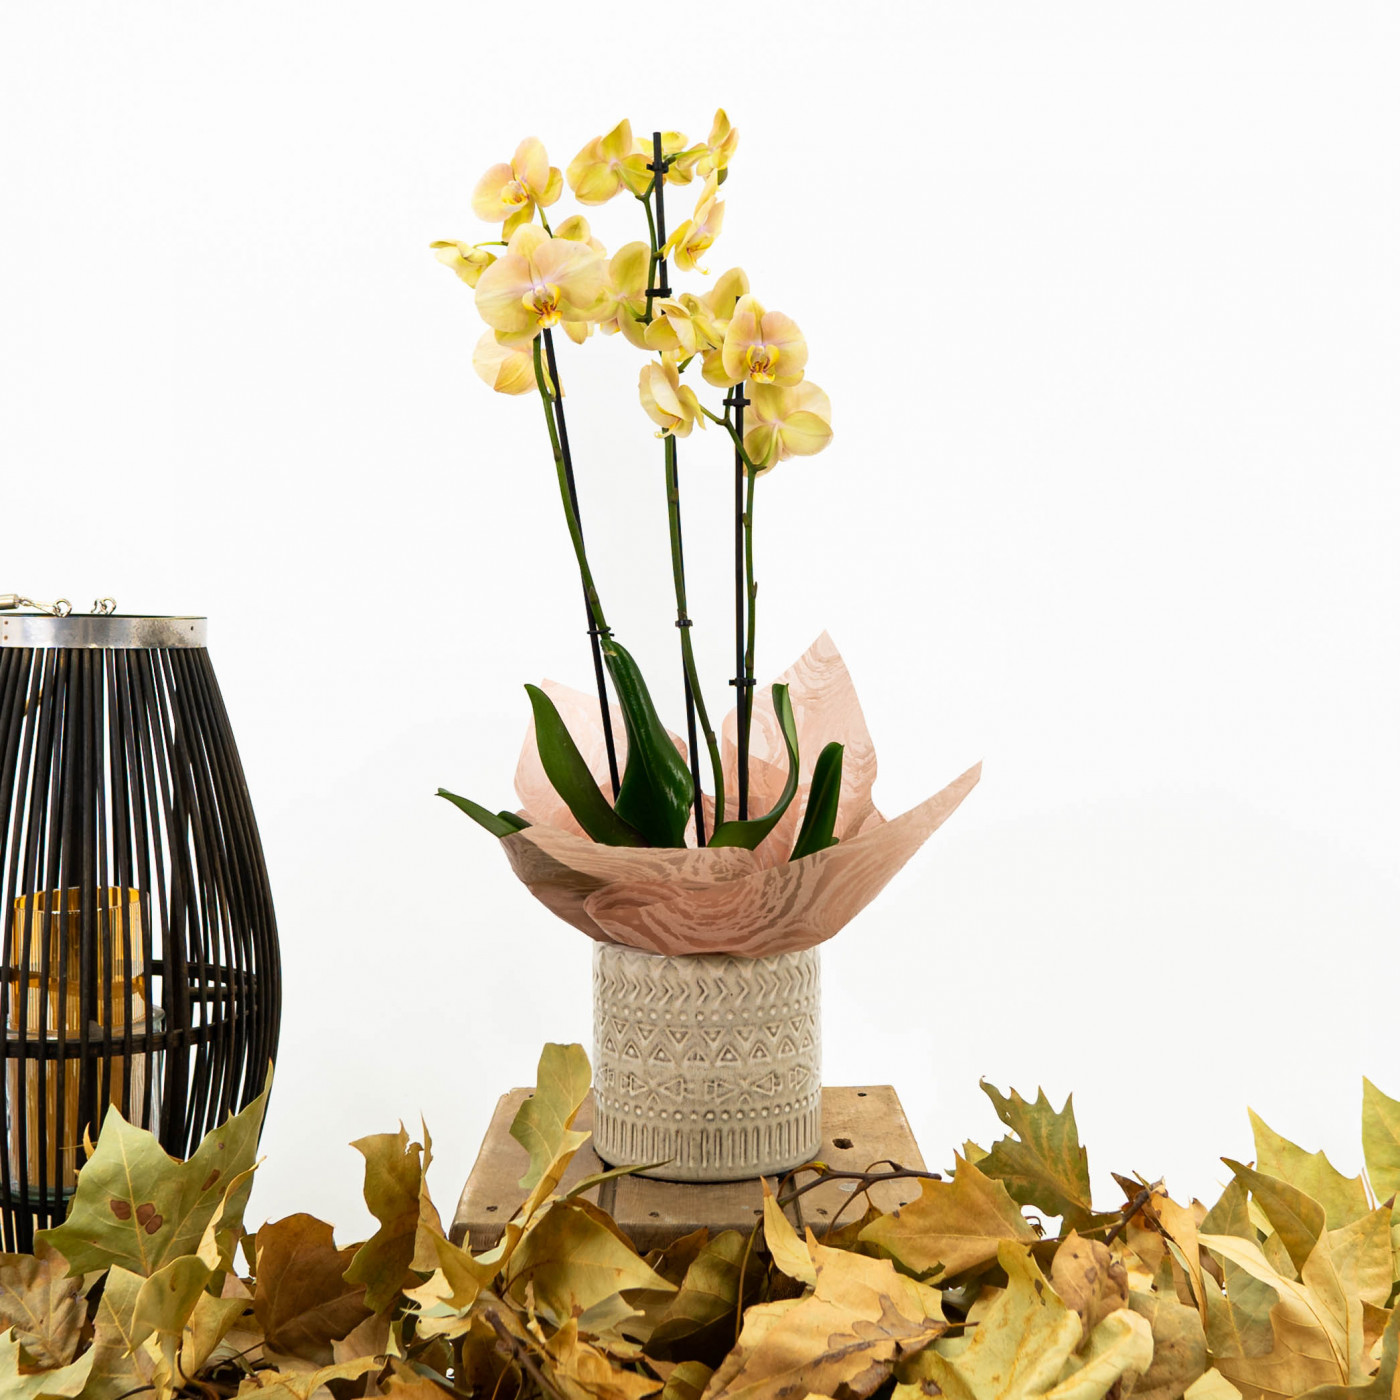 Comprar Phaleanopsis otoño en tiesto de cerámica Barcelona